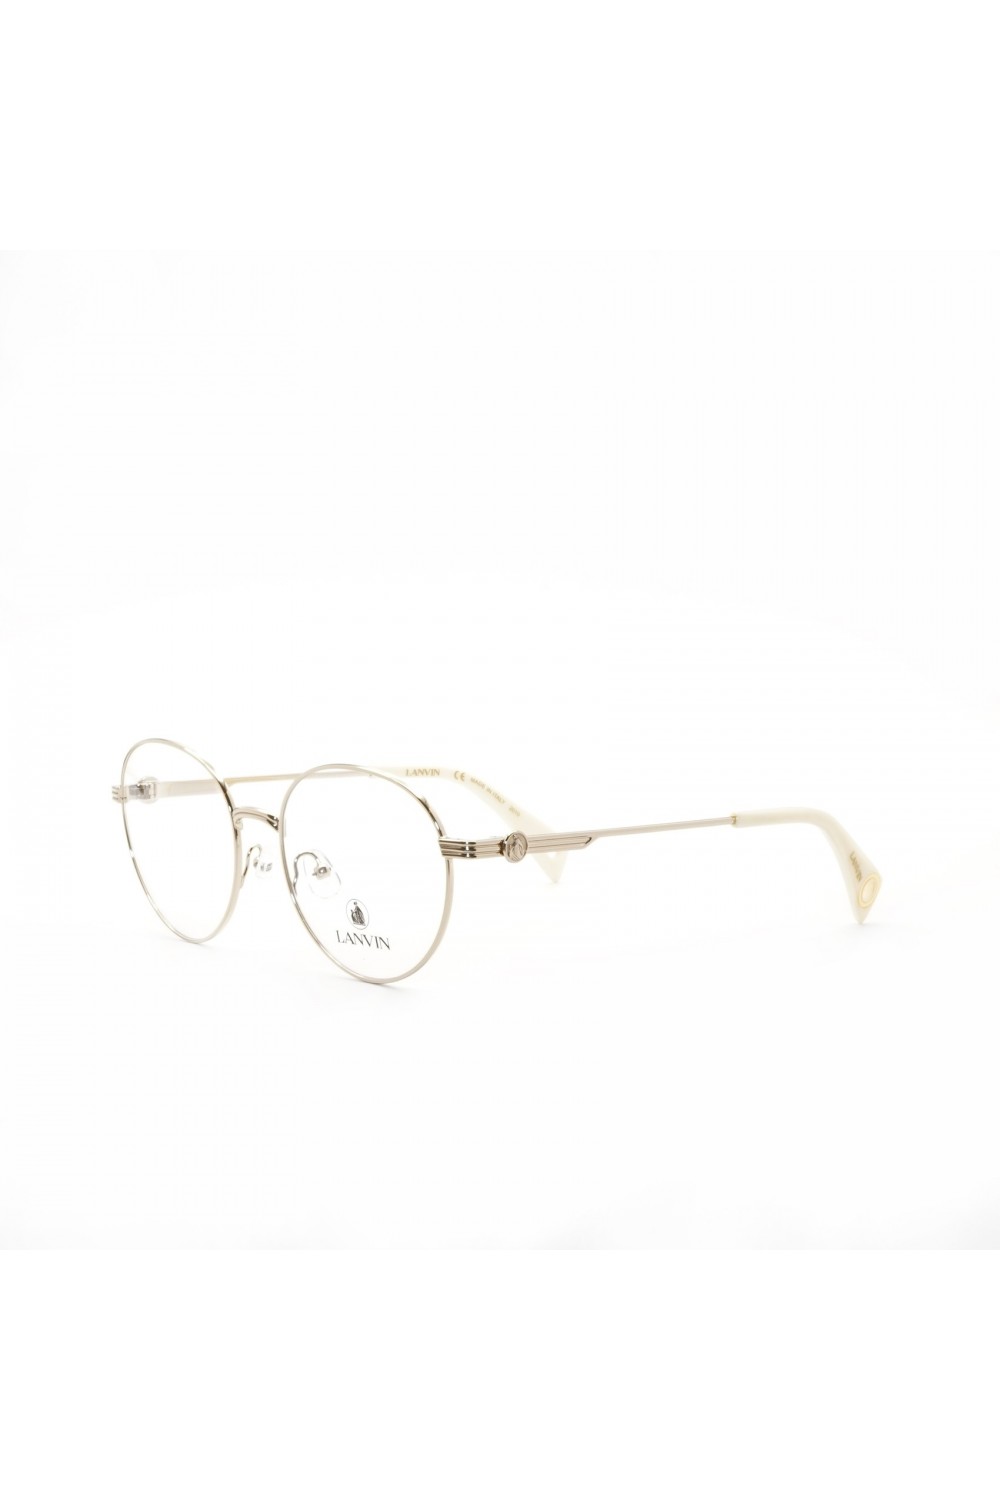 Lanvin - Occhiali da vista in metallo tondi per donna oro - LNV2107 722